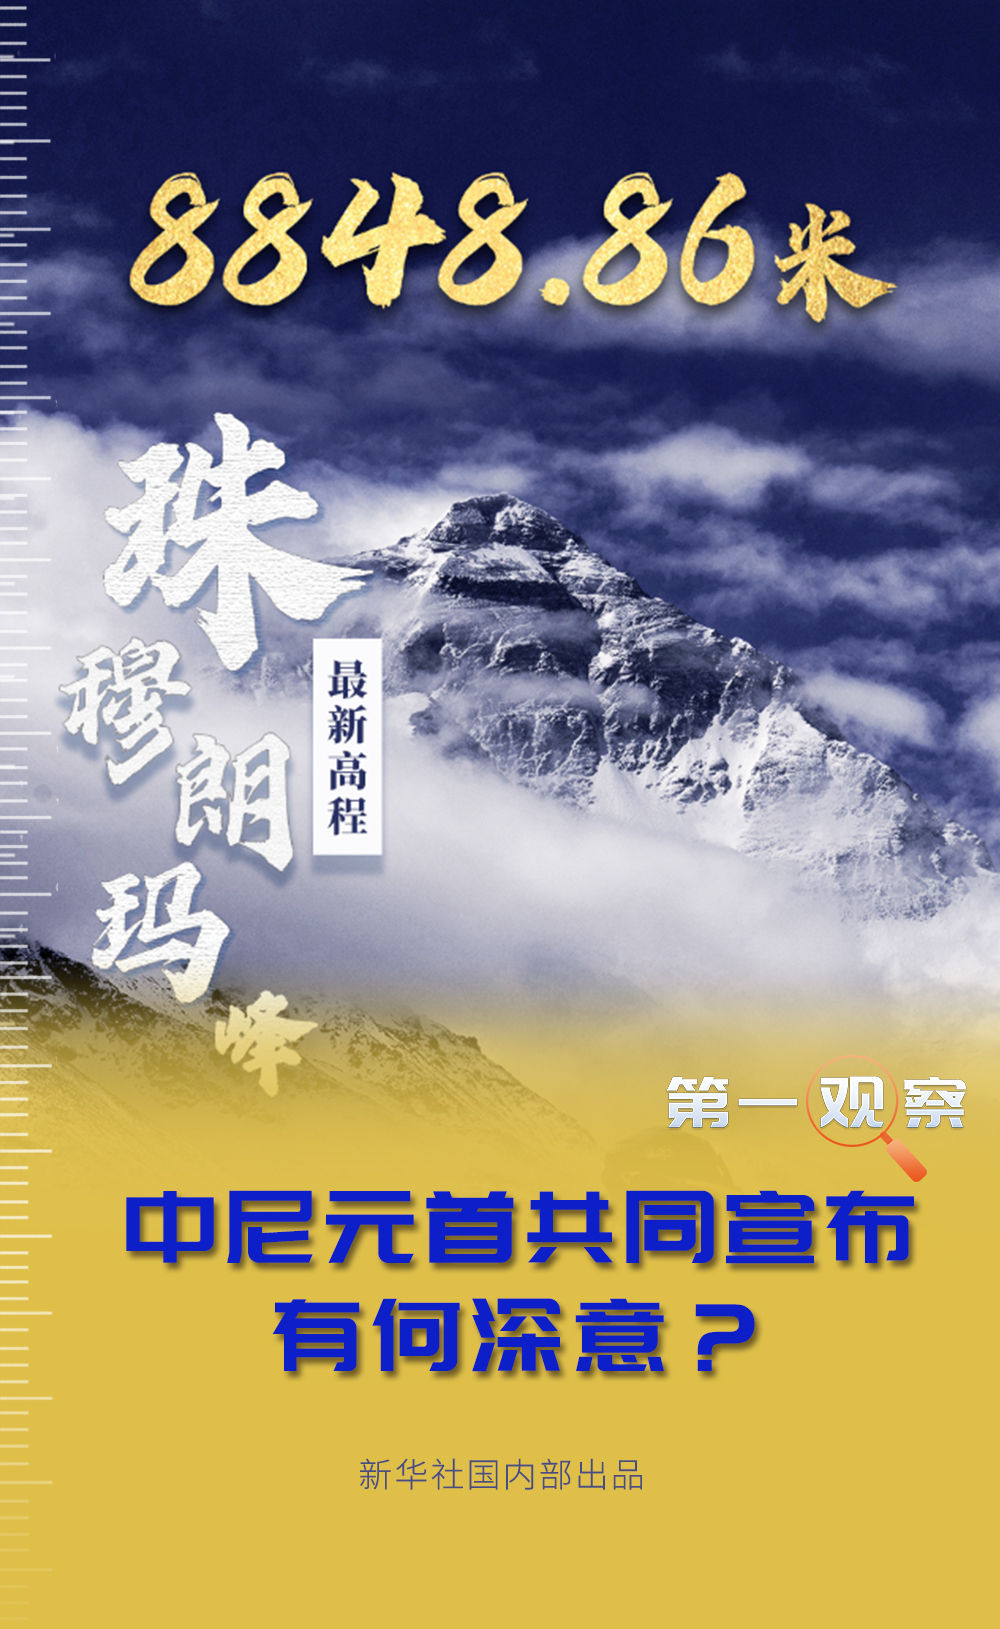 中尼元首共同宣布珠峰“身高”有何深意？